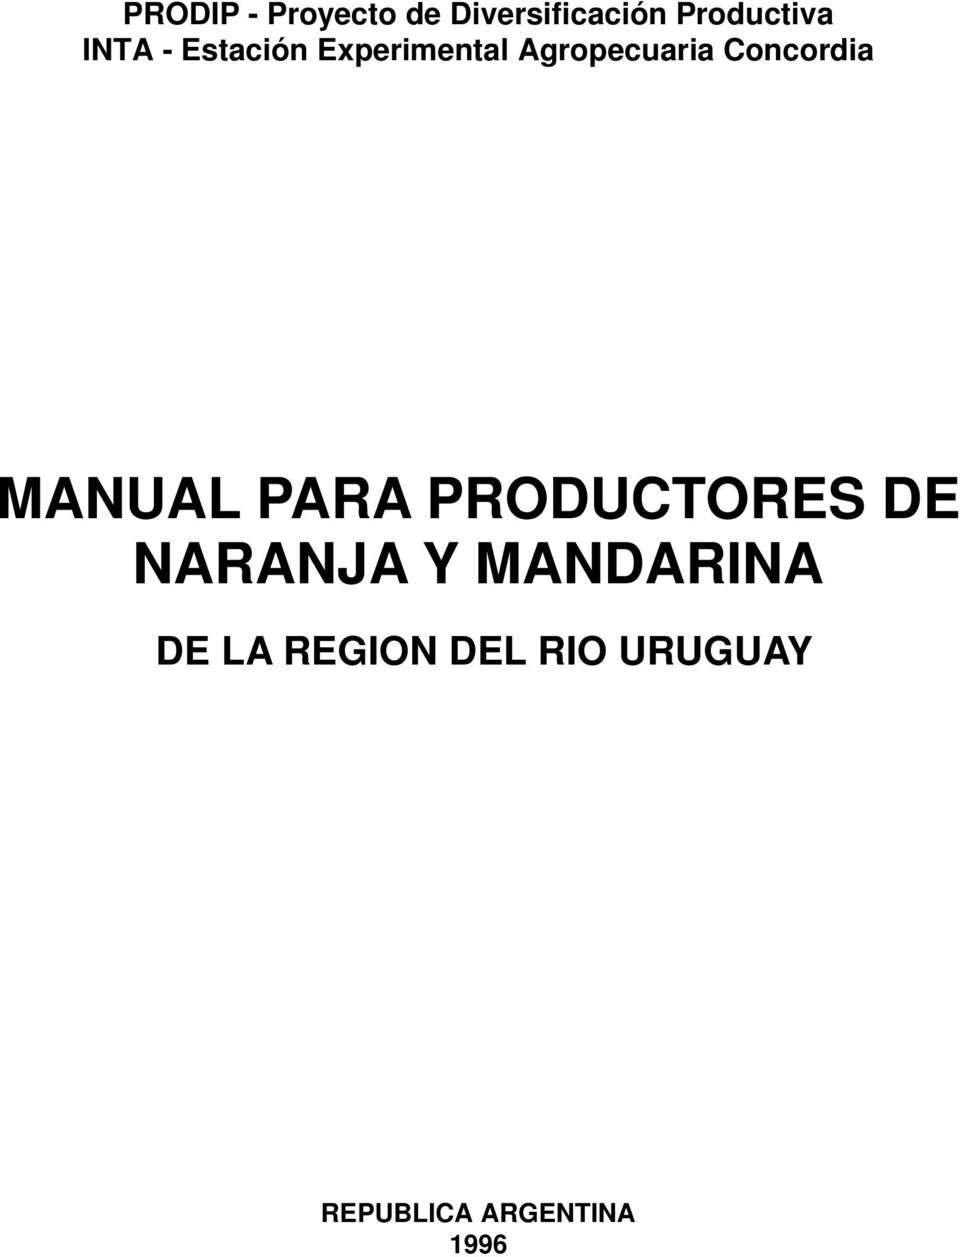 Concordia MANUAL PARA PRODUCTORES DE NARANJA Y